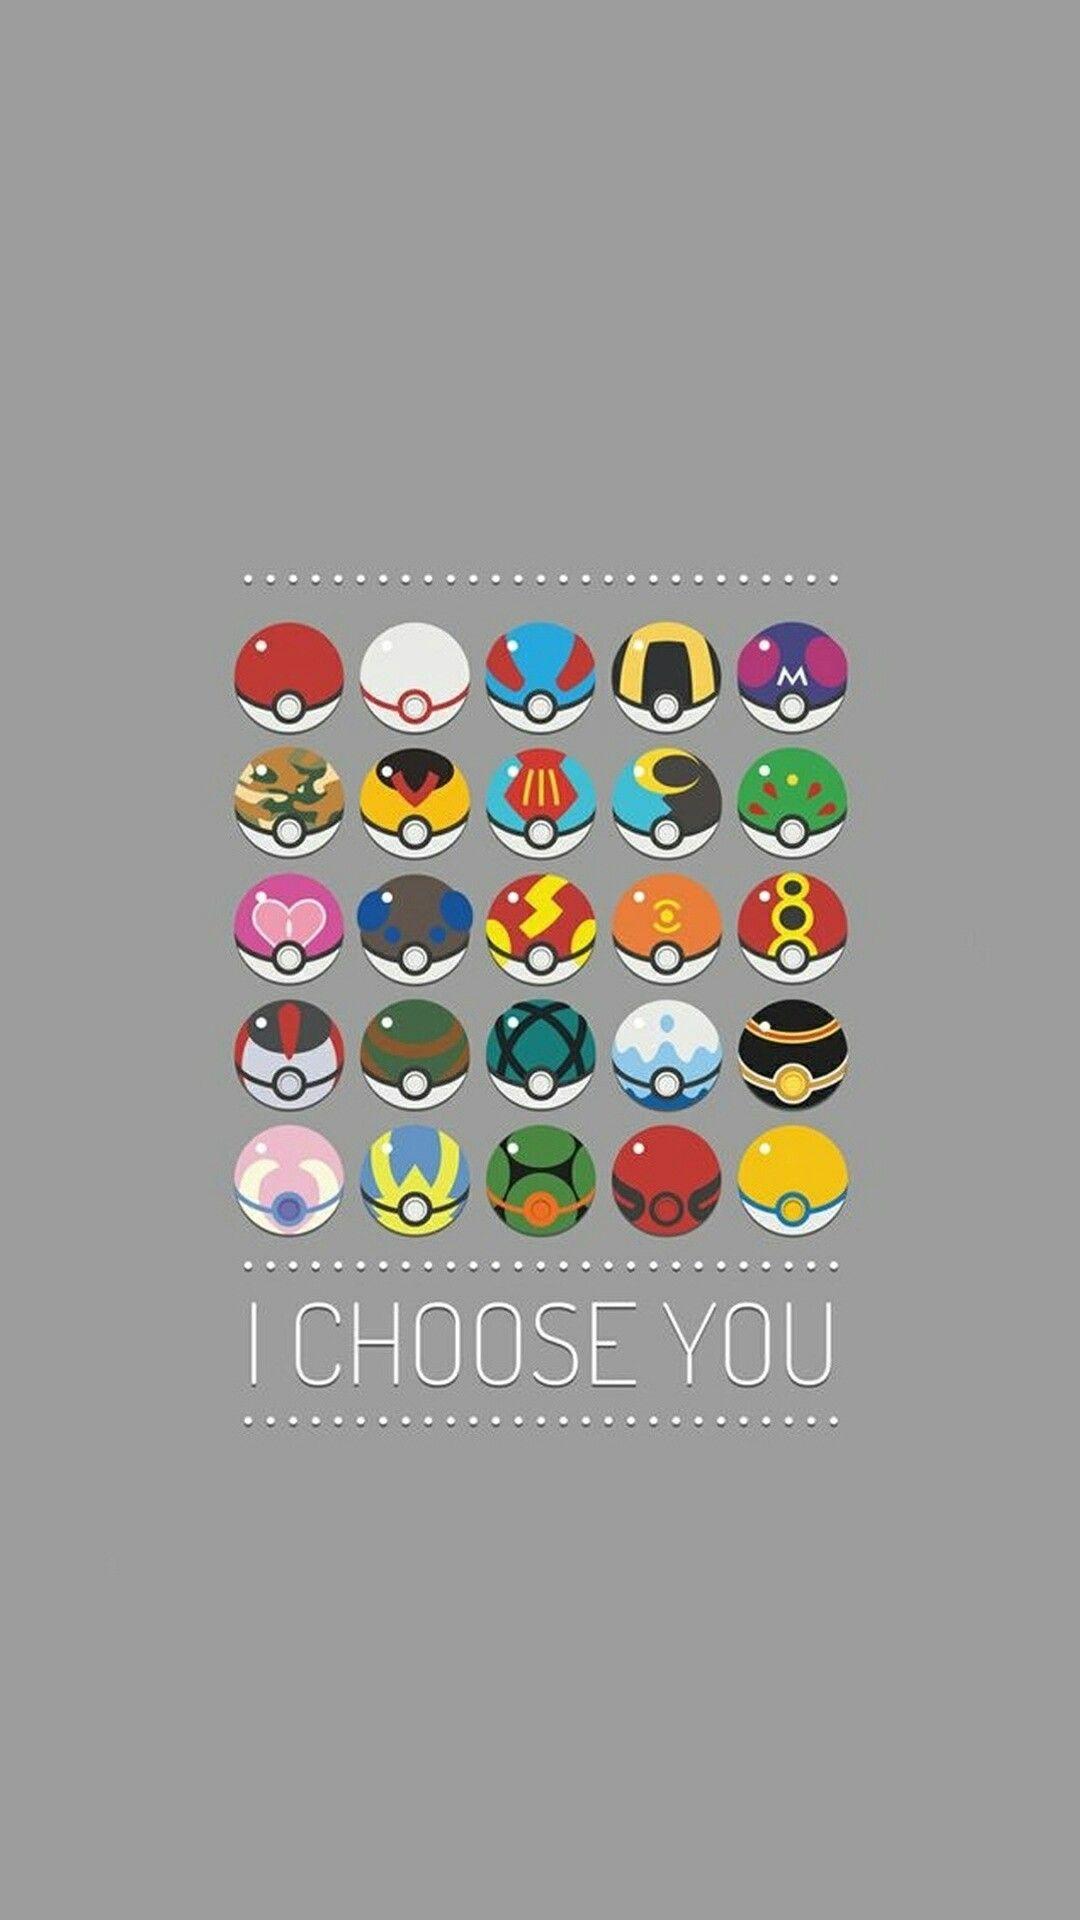 Pokémon: I choose you. Wallpaper. Pokémon, I choose you, Cute pokemon